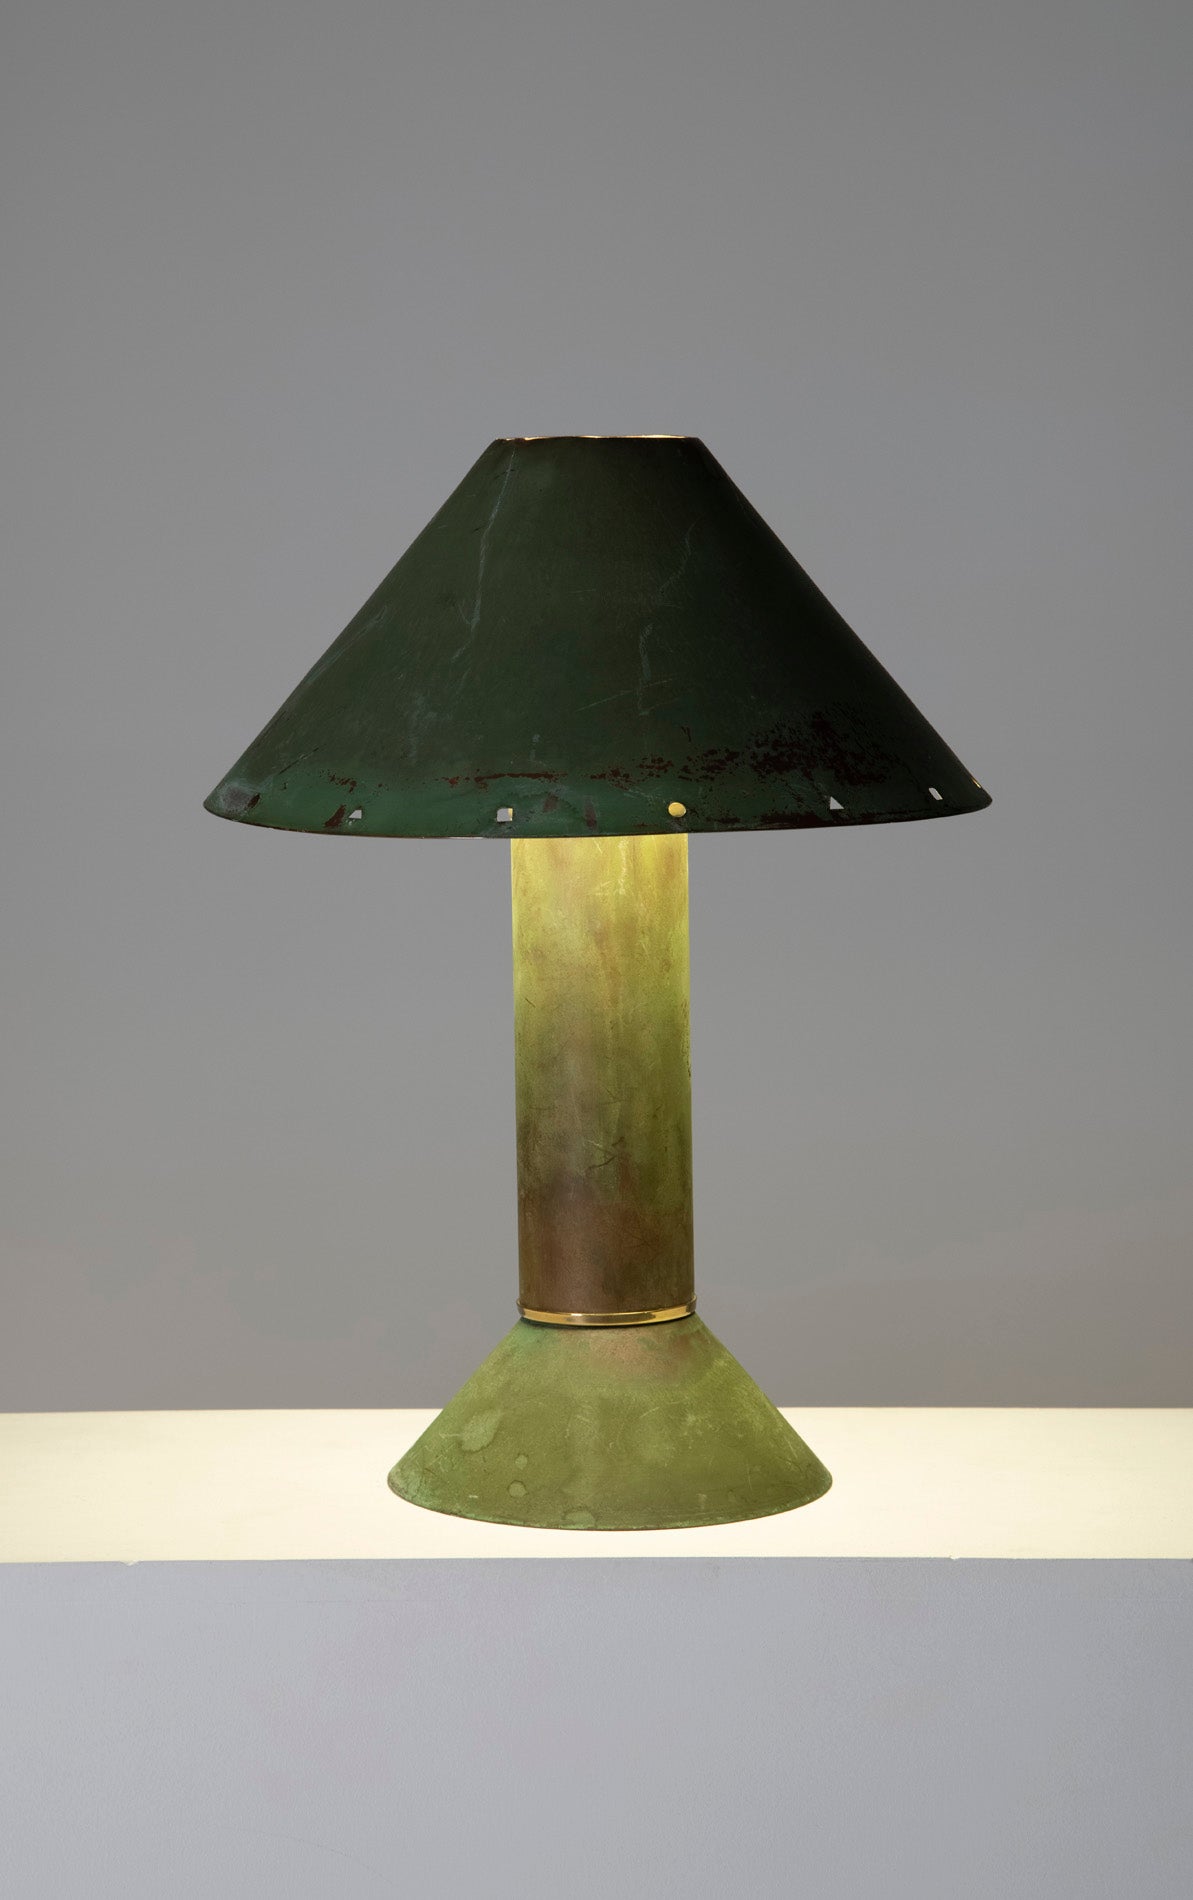 Lampe de table en cuivre par Ron Rezek, années 1990. Habituellement en acier galvanisé celle ci est une version unique en cuivre.